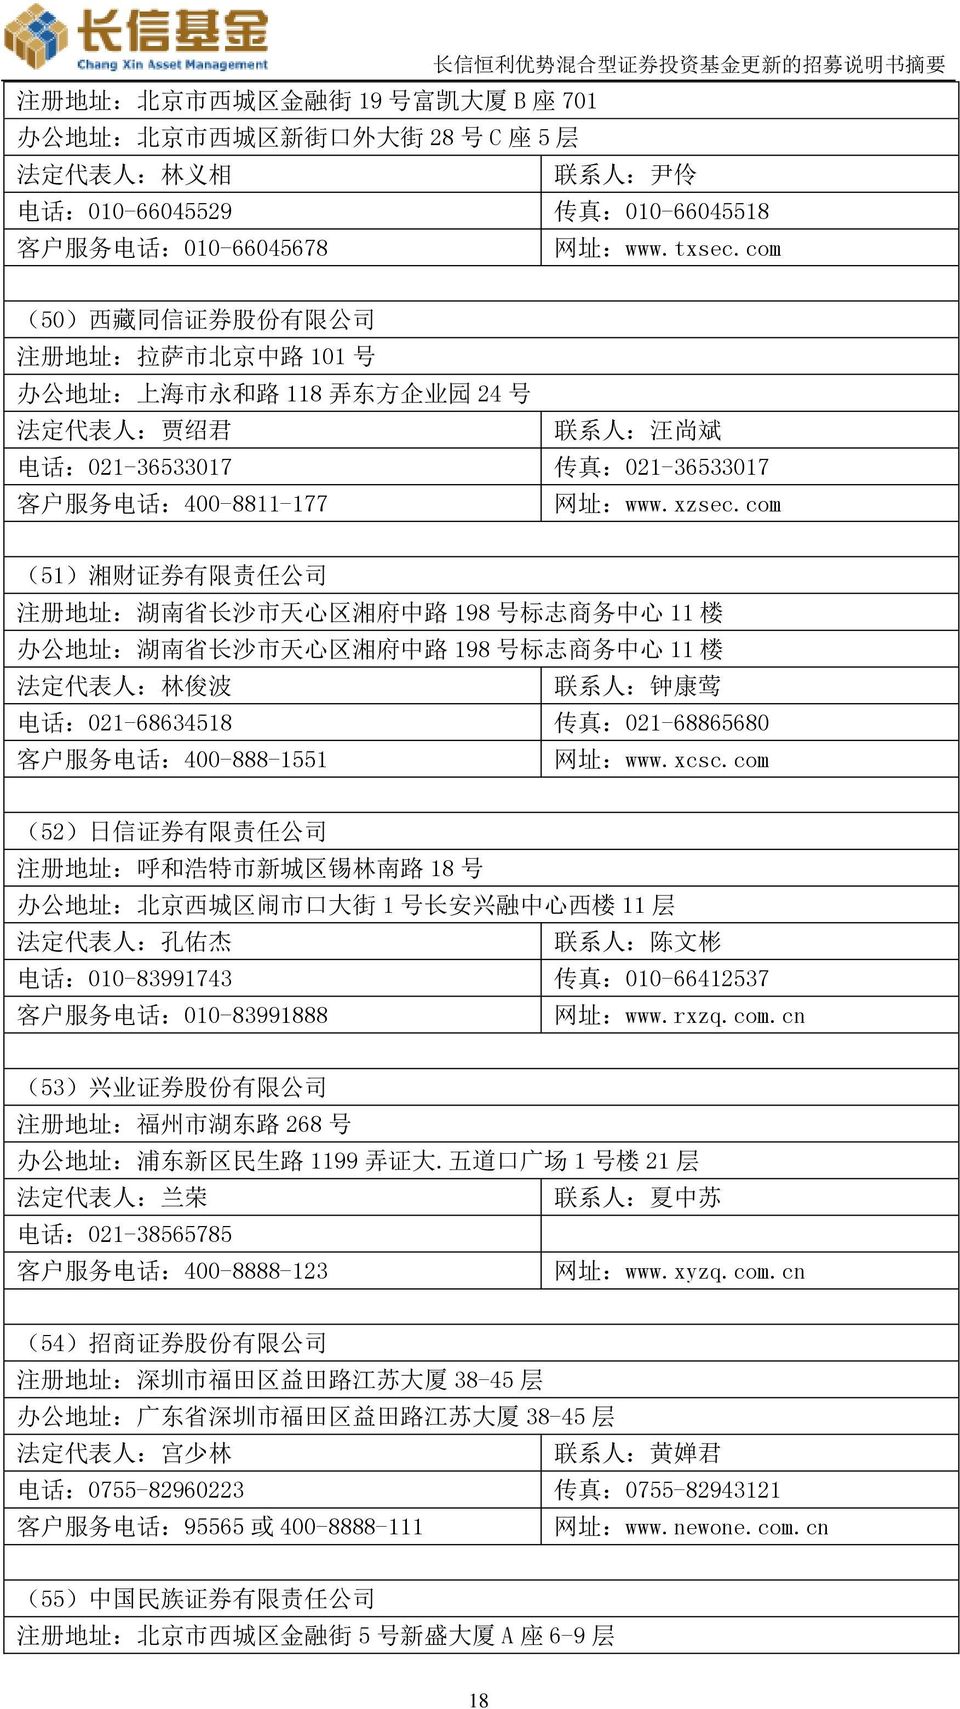 com (50) 西 藏 同 信 证 券 股 份 有 限 公 司 注 册 地 址 : 拉 萨 市 北 京 中 路 101 号 办 公 地 址 : 上 海 市 永 和 路 118 弄 东 方 企 业 园 24 号 法 定 代 表 人 : 贾 绍 君 联 系 人 : 汪 尚 斌 电 话 :021-36533017 传 真 :021-36533017 客 户 服 务 电 话 :400-8811-177